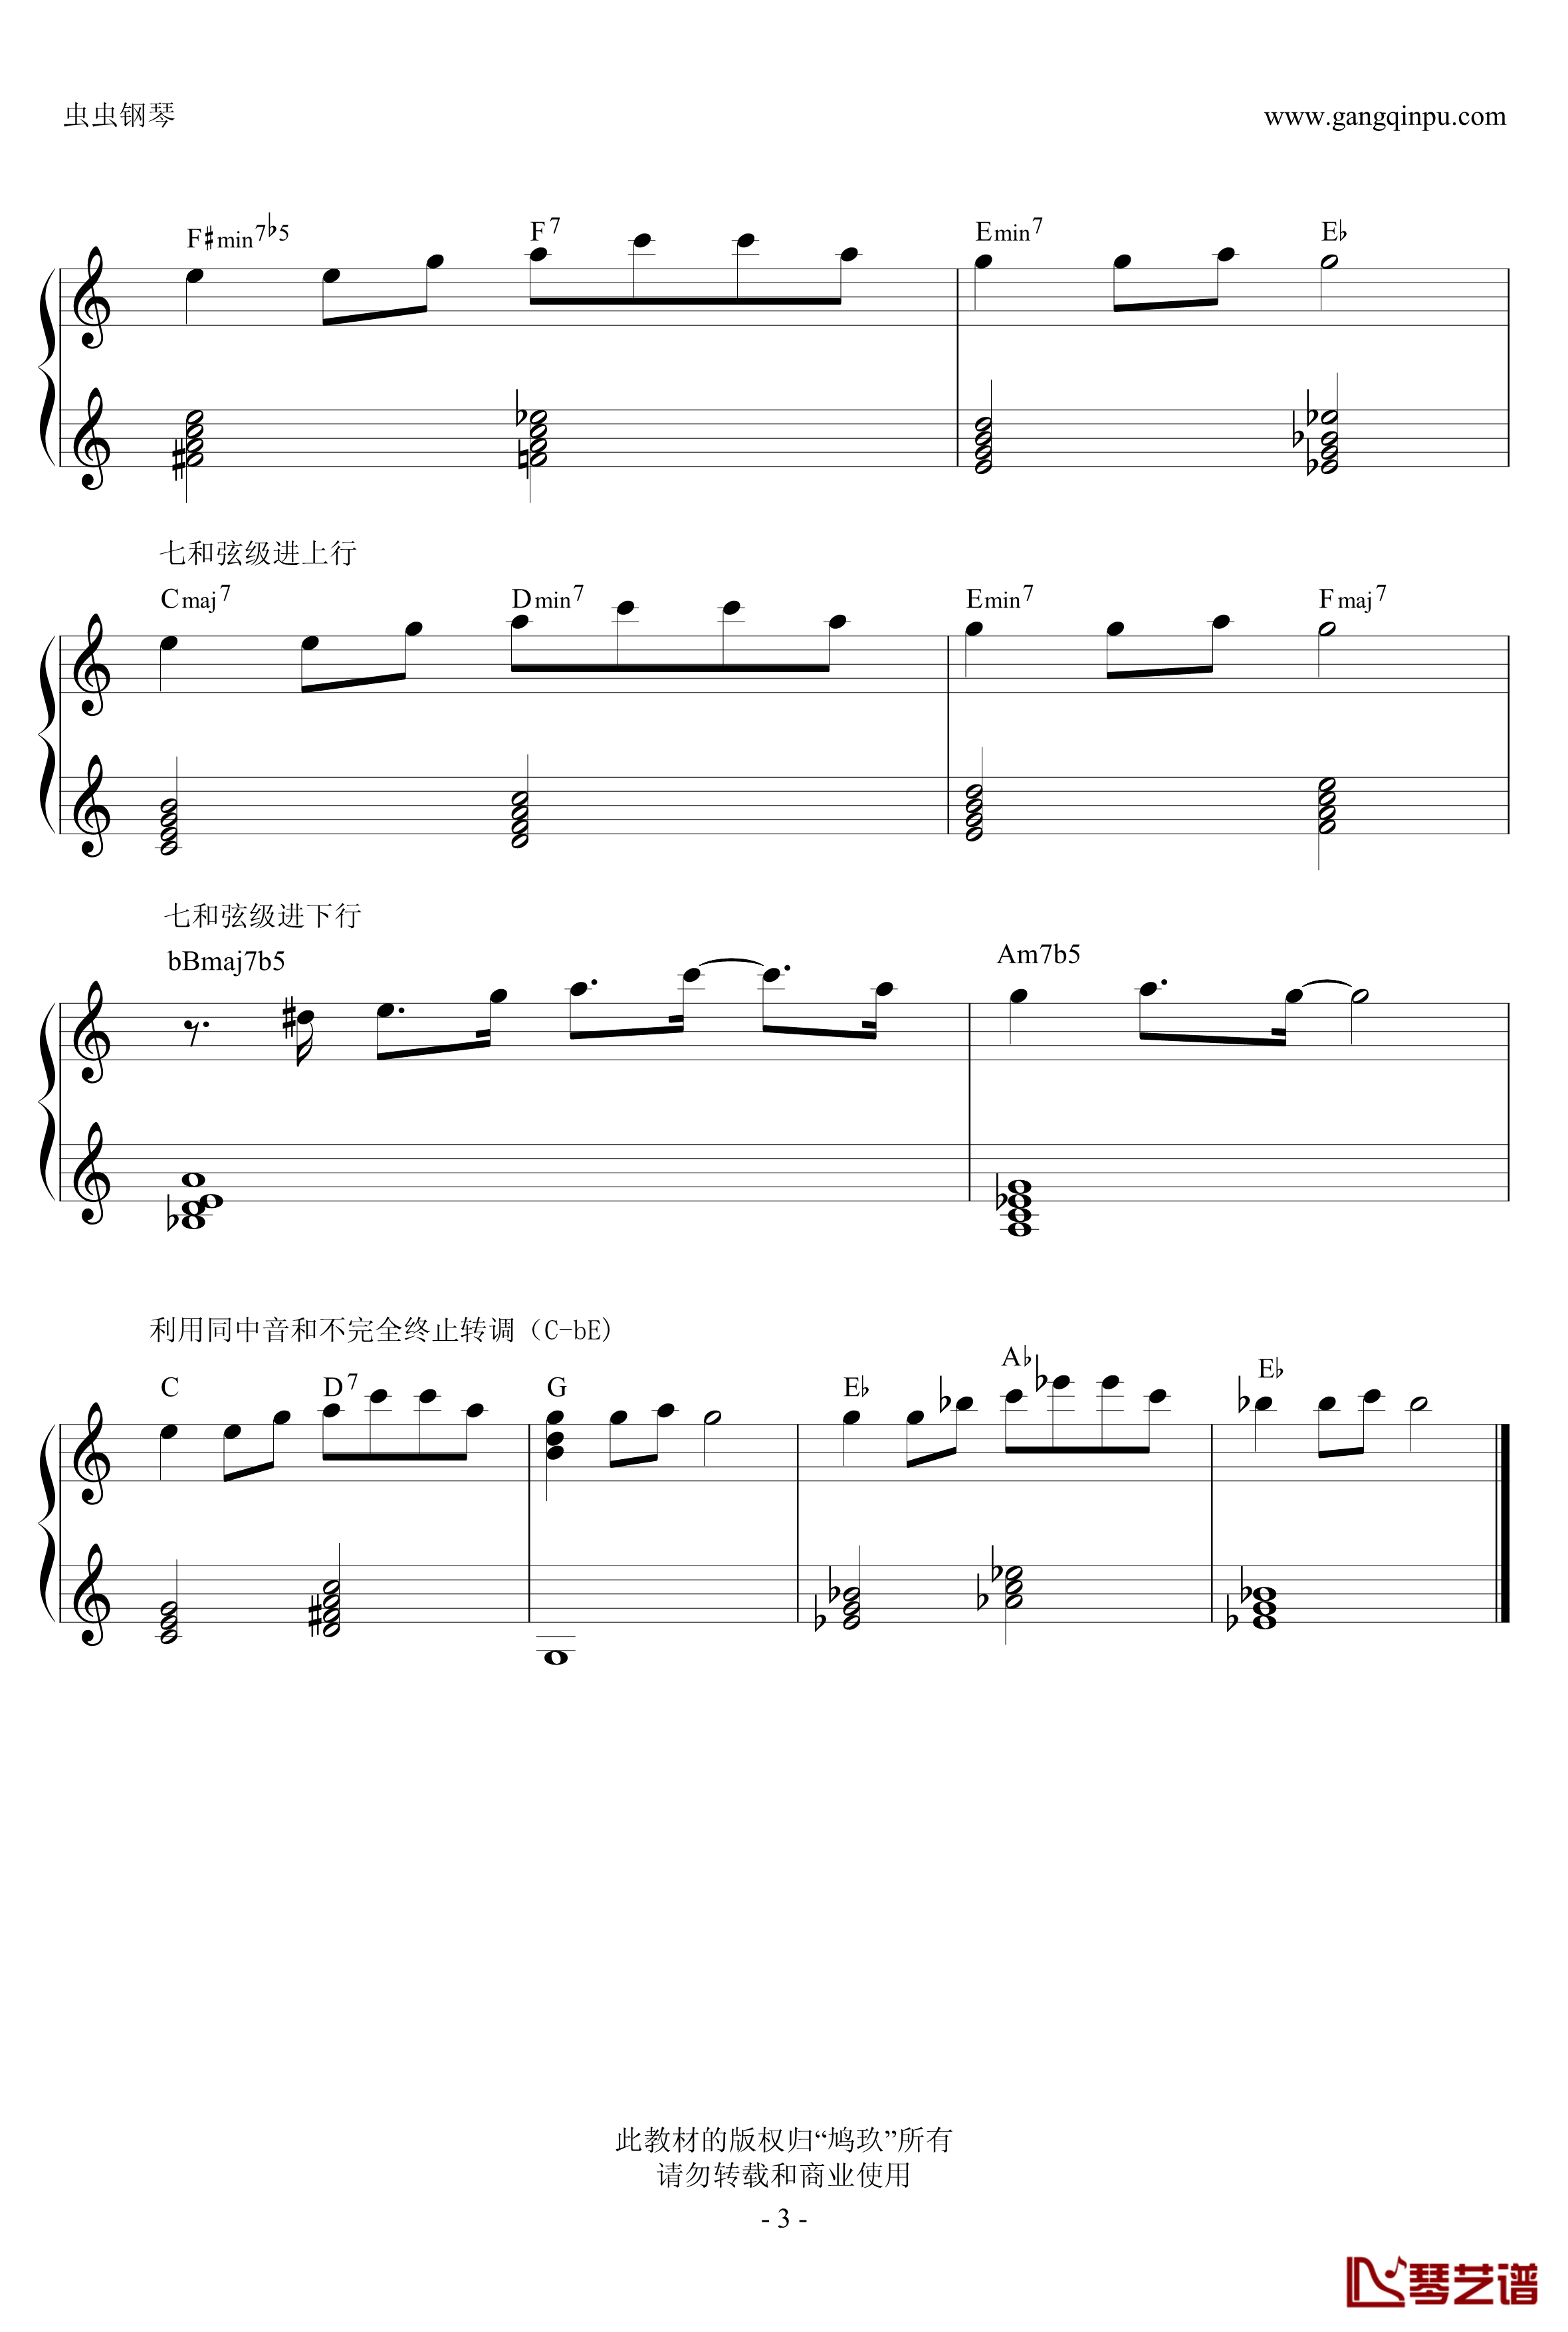 超实用即兴伴奏教材2钢琴谱-变化和弦-鸠玖3